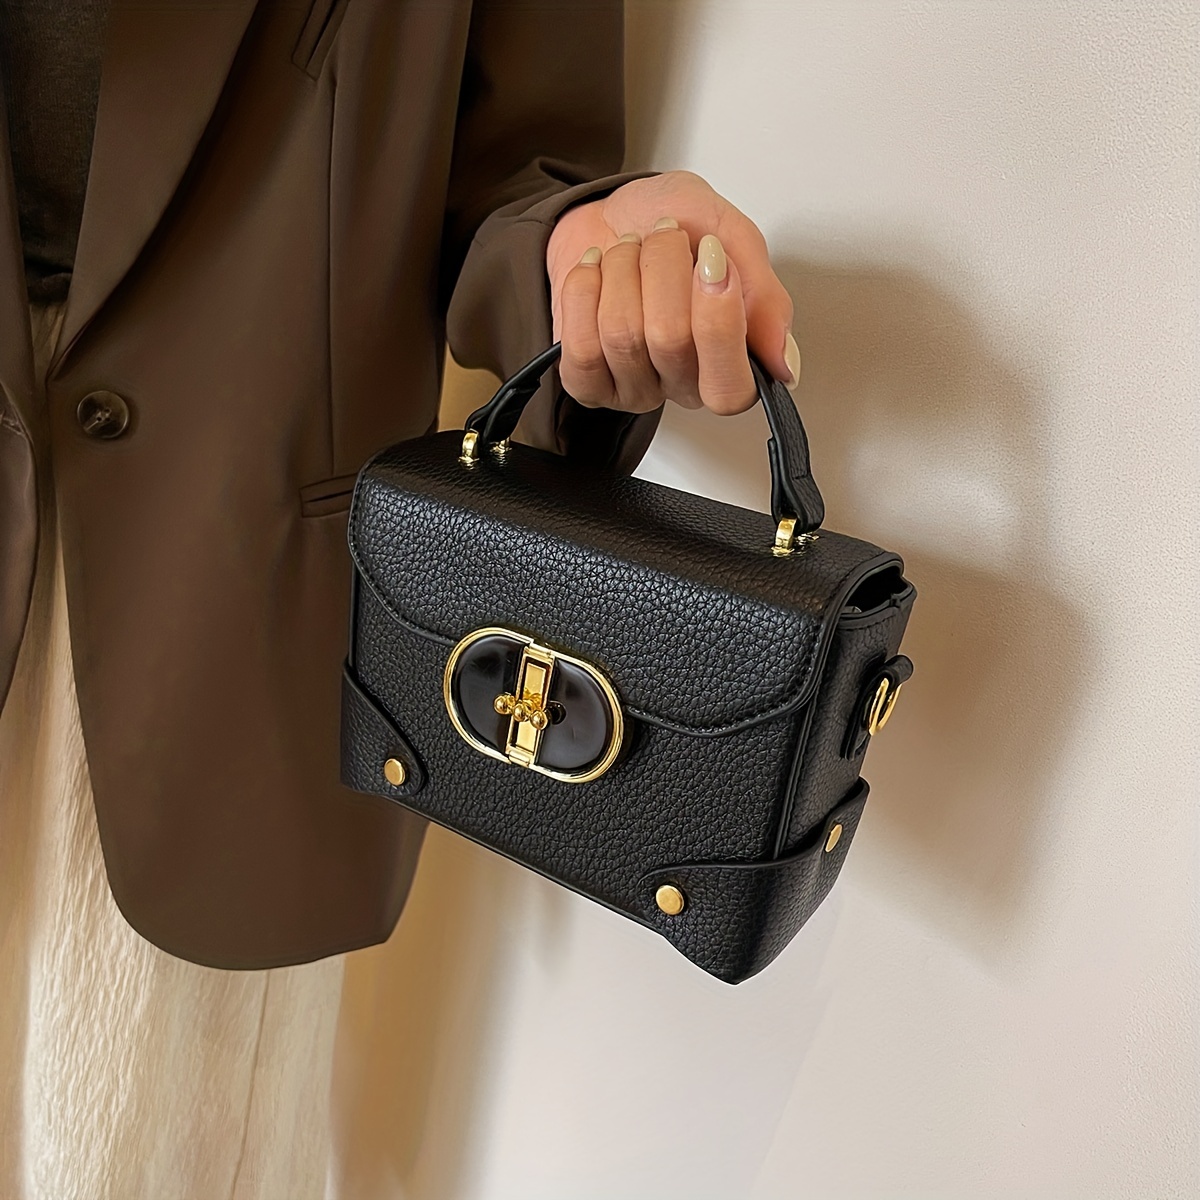 Las mejores ofertas en Manija Superior/Louis Vuitton Satchel Bolso Rojo  Bolsas y bolsos para Mujer